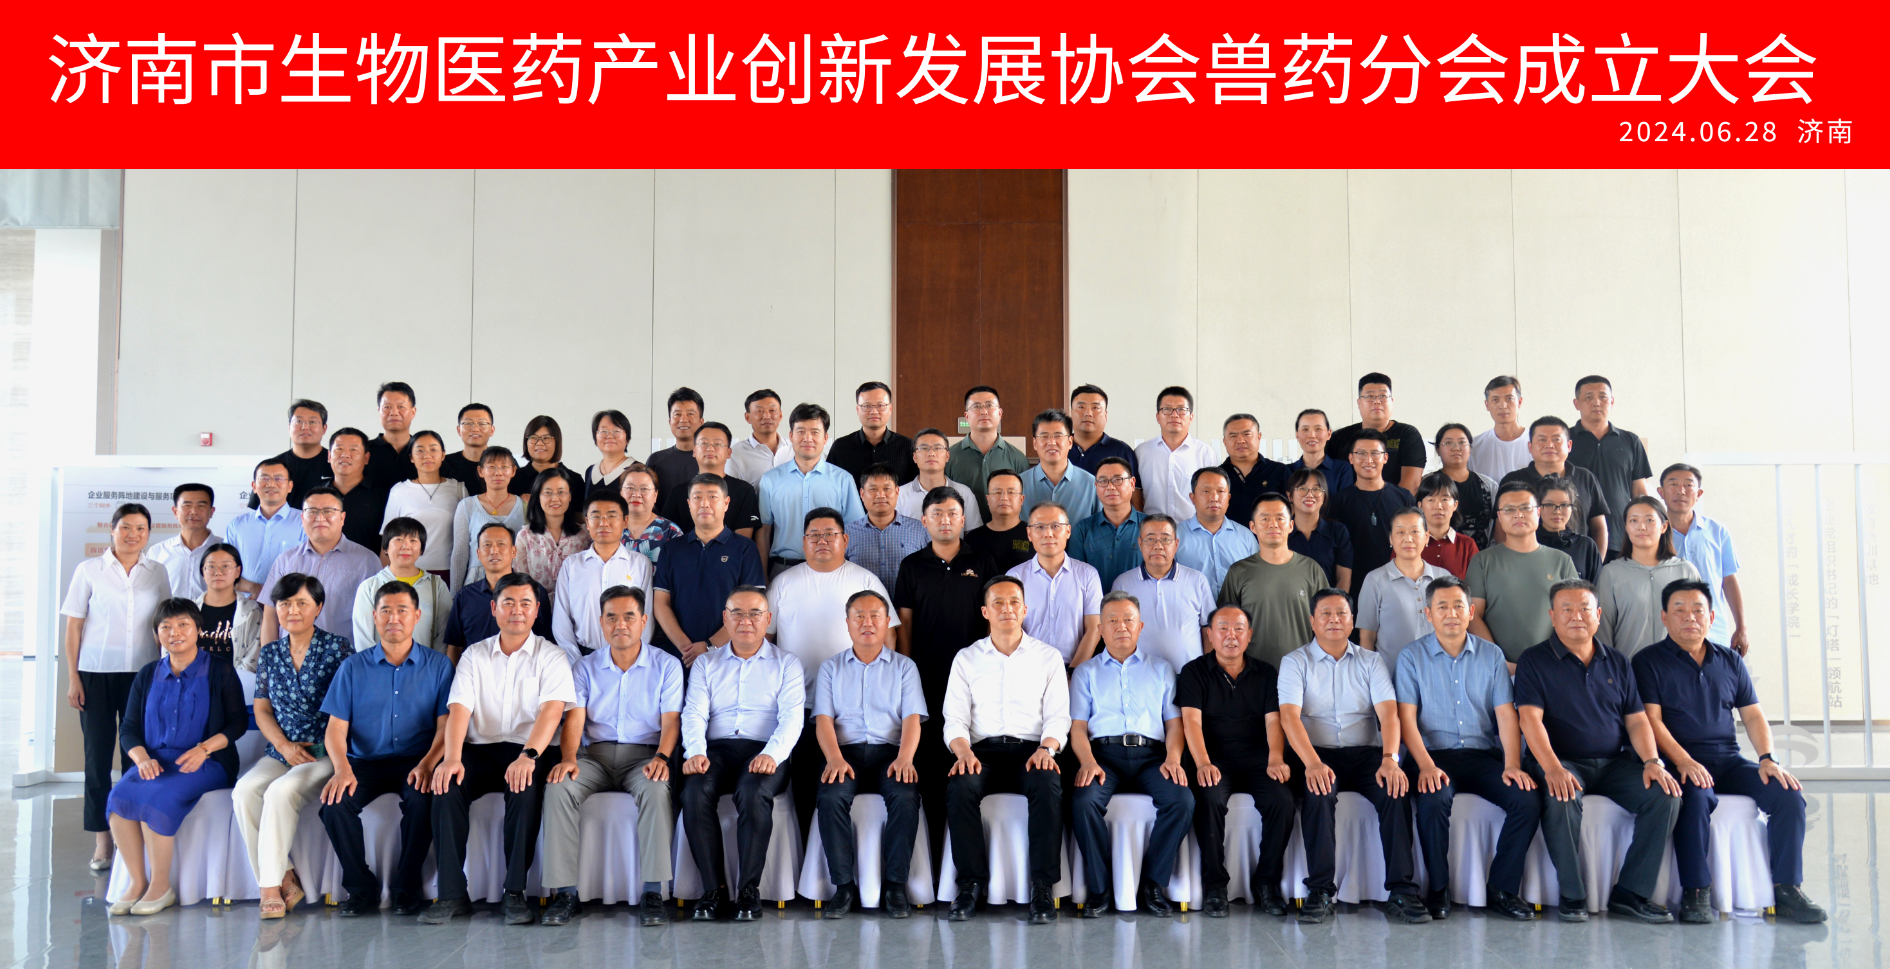 济南市生物医药产业创新发展协会兽药分会成立大会6月28日在济南成功举办